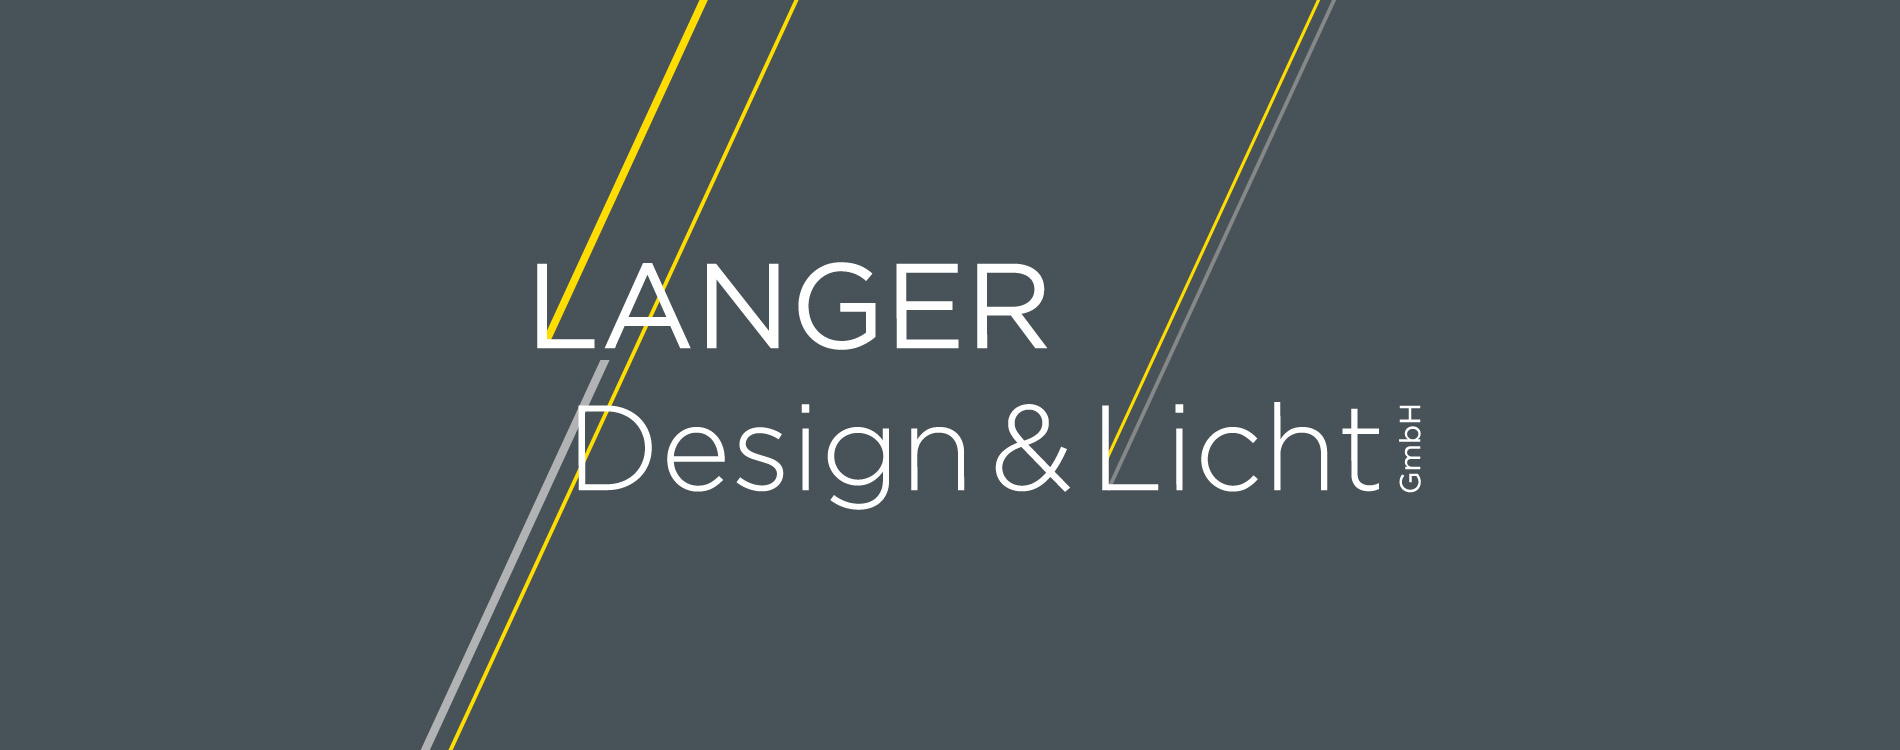 01_Header_LANGER_Design.jpg